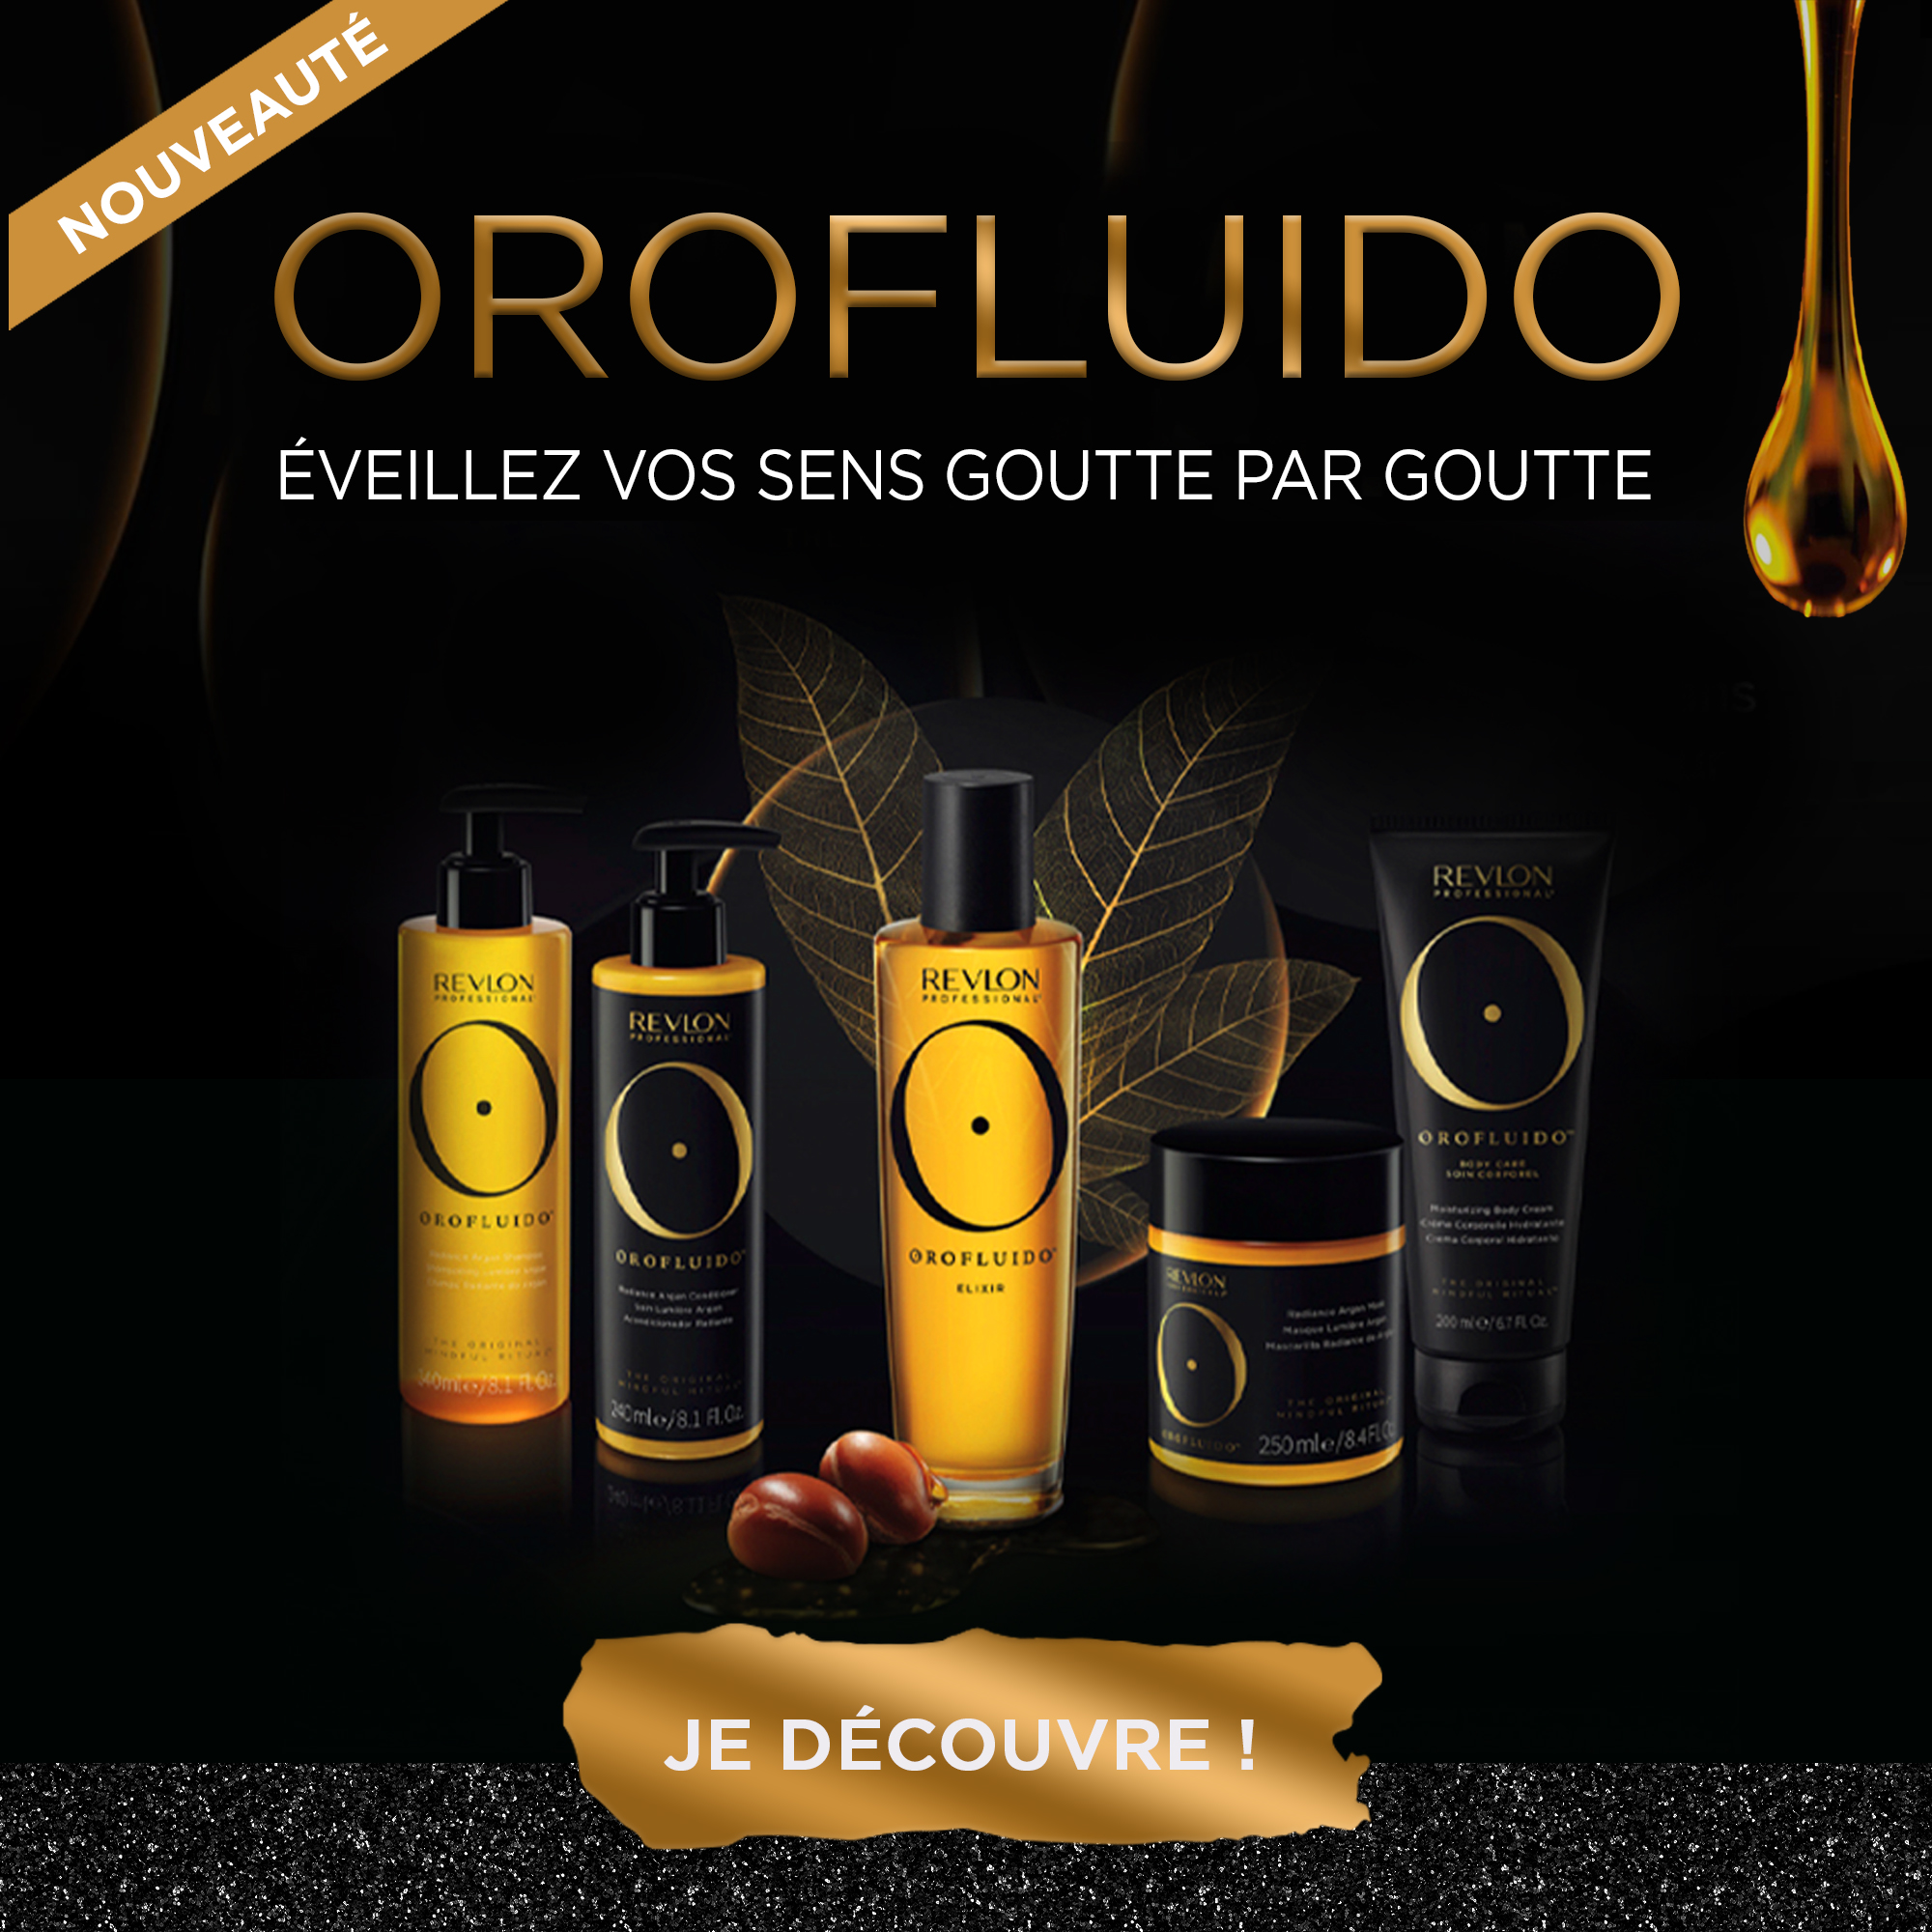 Orofluido by Revlon : La nouvelle gamme de soins pour cheveux et corps à l'huile d'argan